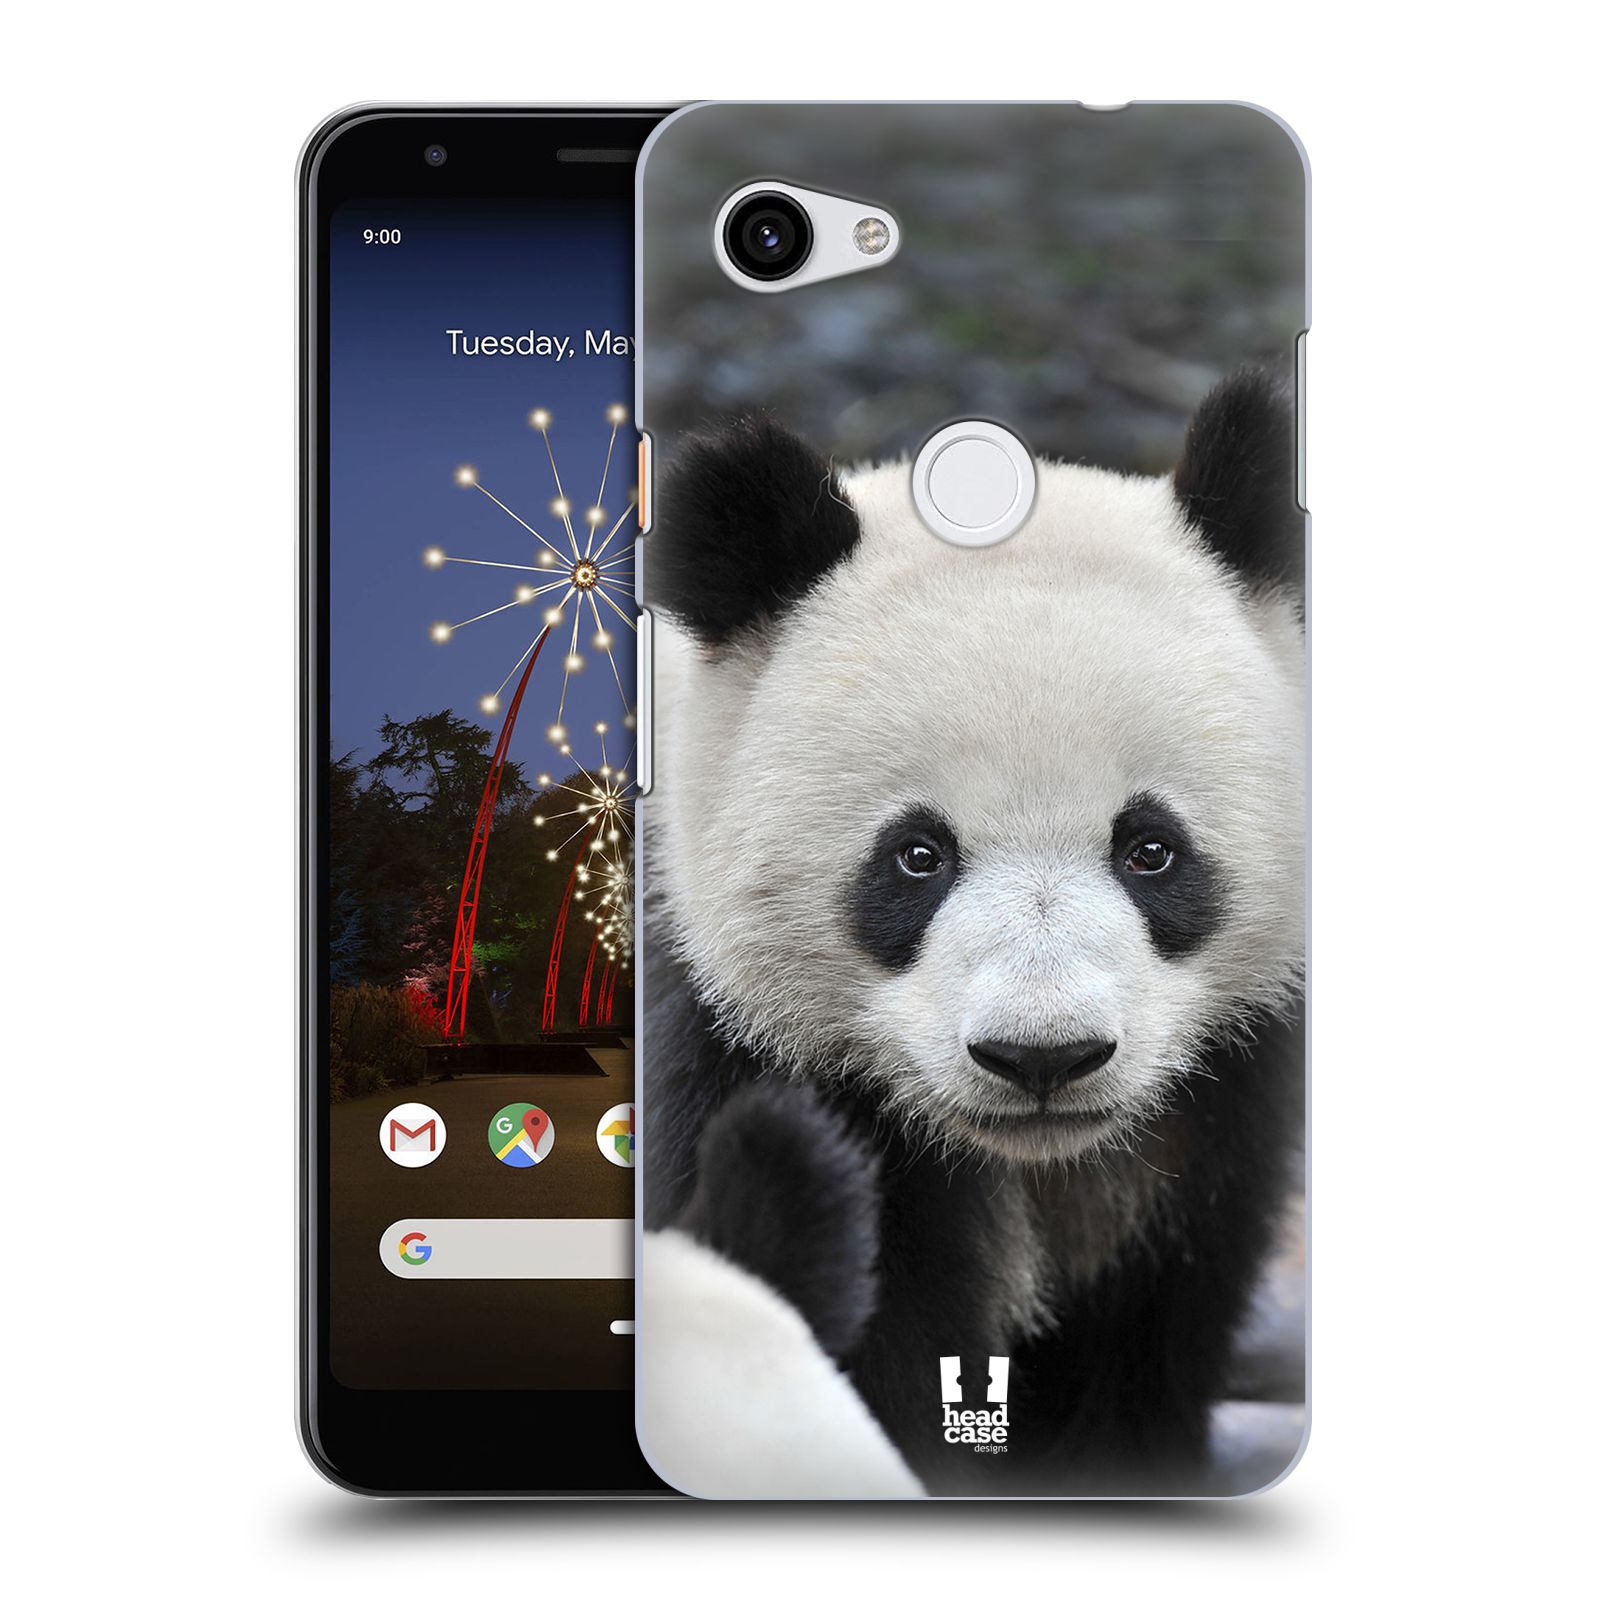 Zadní obal pro mobil Google Pixel 3a XL - HEAD CASE - Svět zvířat medvěd panda